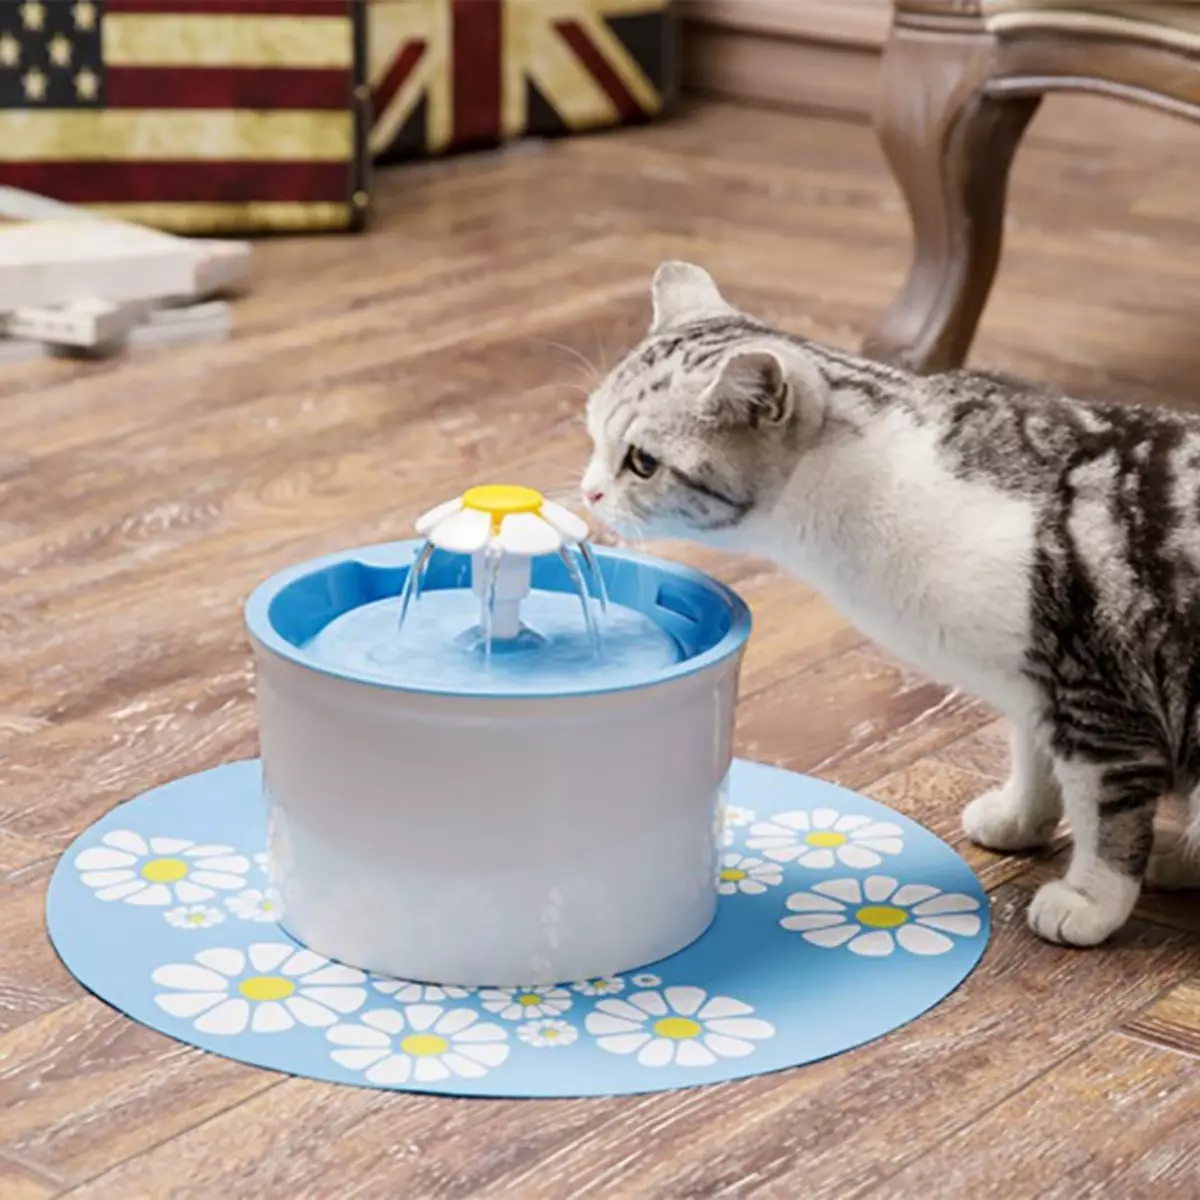 Мачји јахач: Аутоматска фонтана за пиће за мачку. Како научити питку воду за пиће из посуде или аутоматског аутомобила? 11892_22